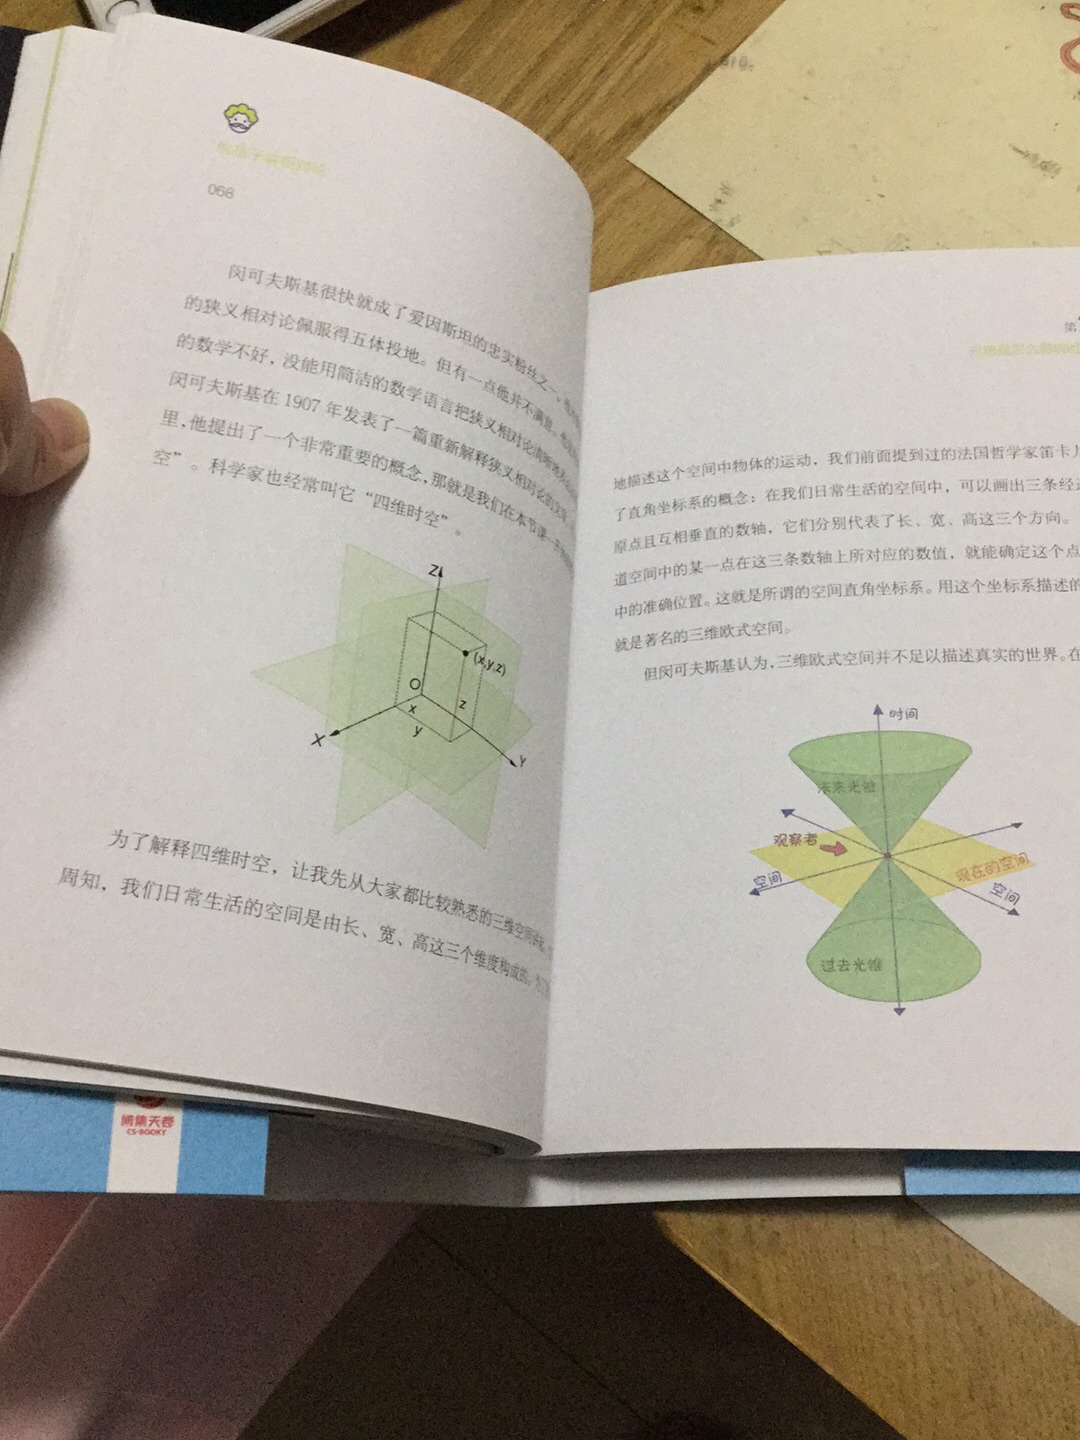 学物理之前先提高兴趣 不然学了也不明白 谢谢李淼老师写的这套书